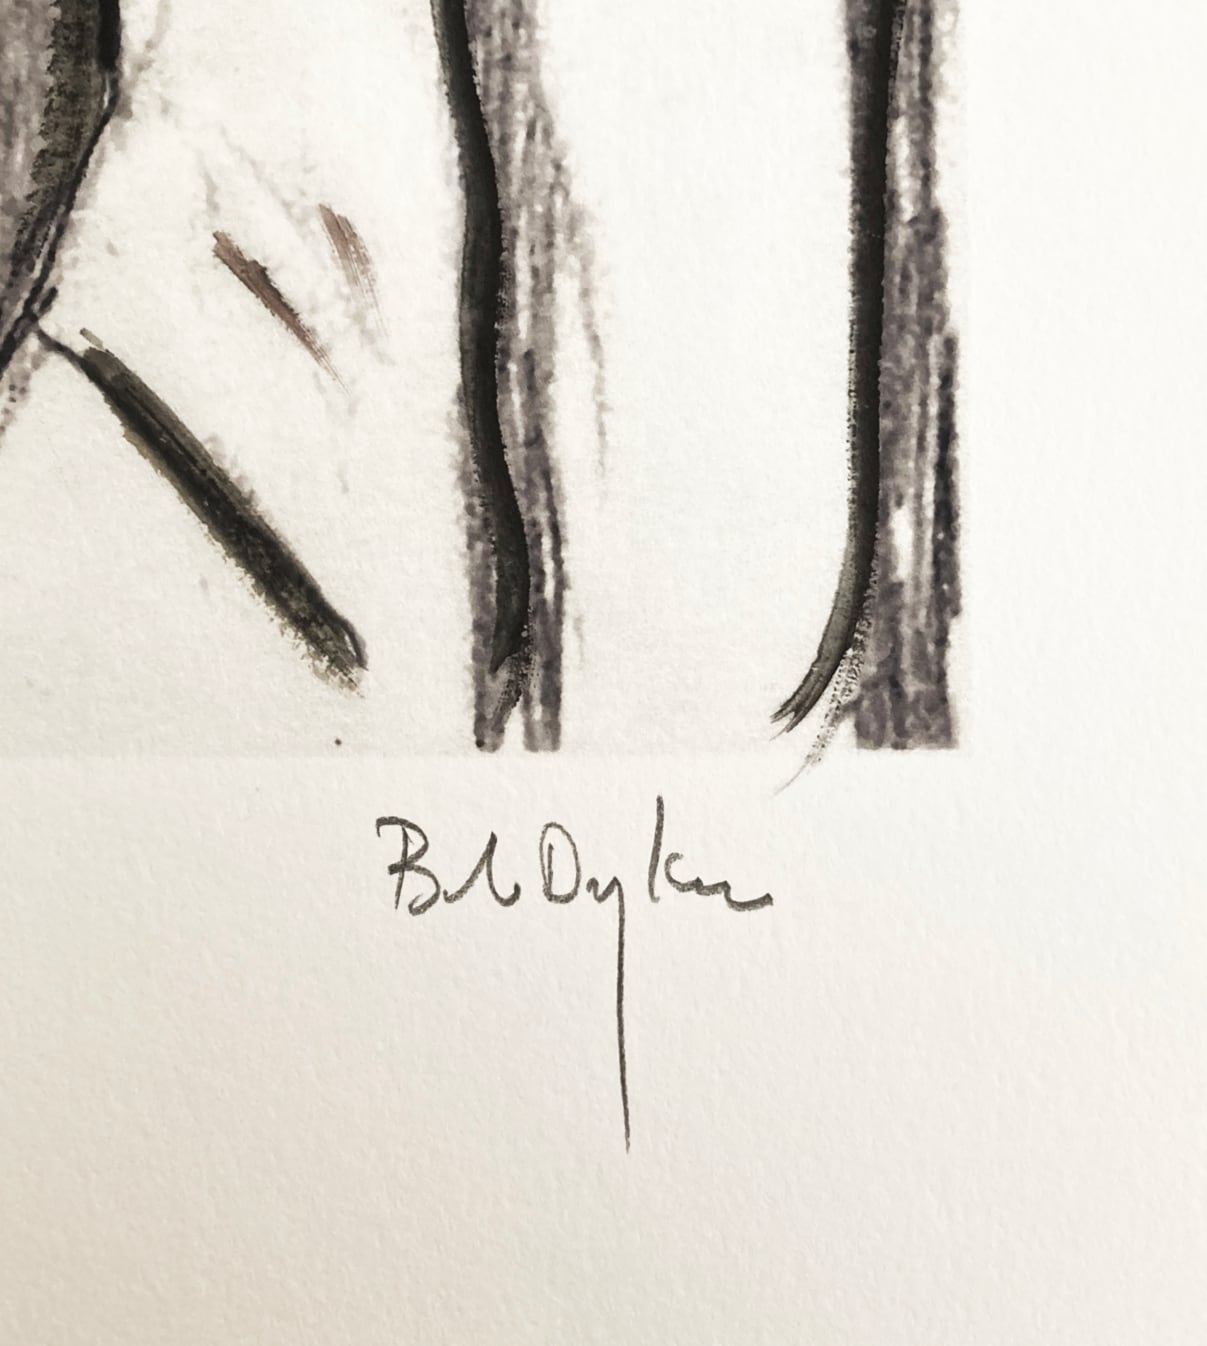 Bob Dylan - Man on a bridge, 2008